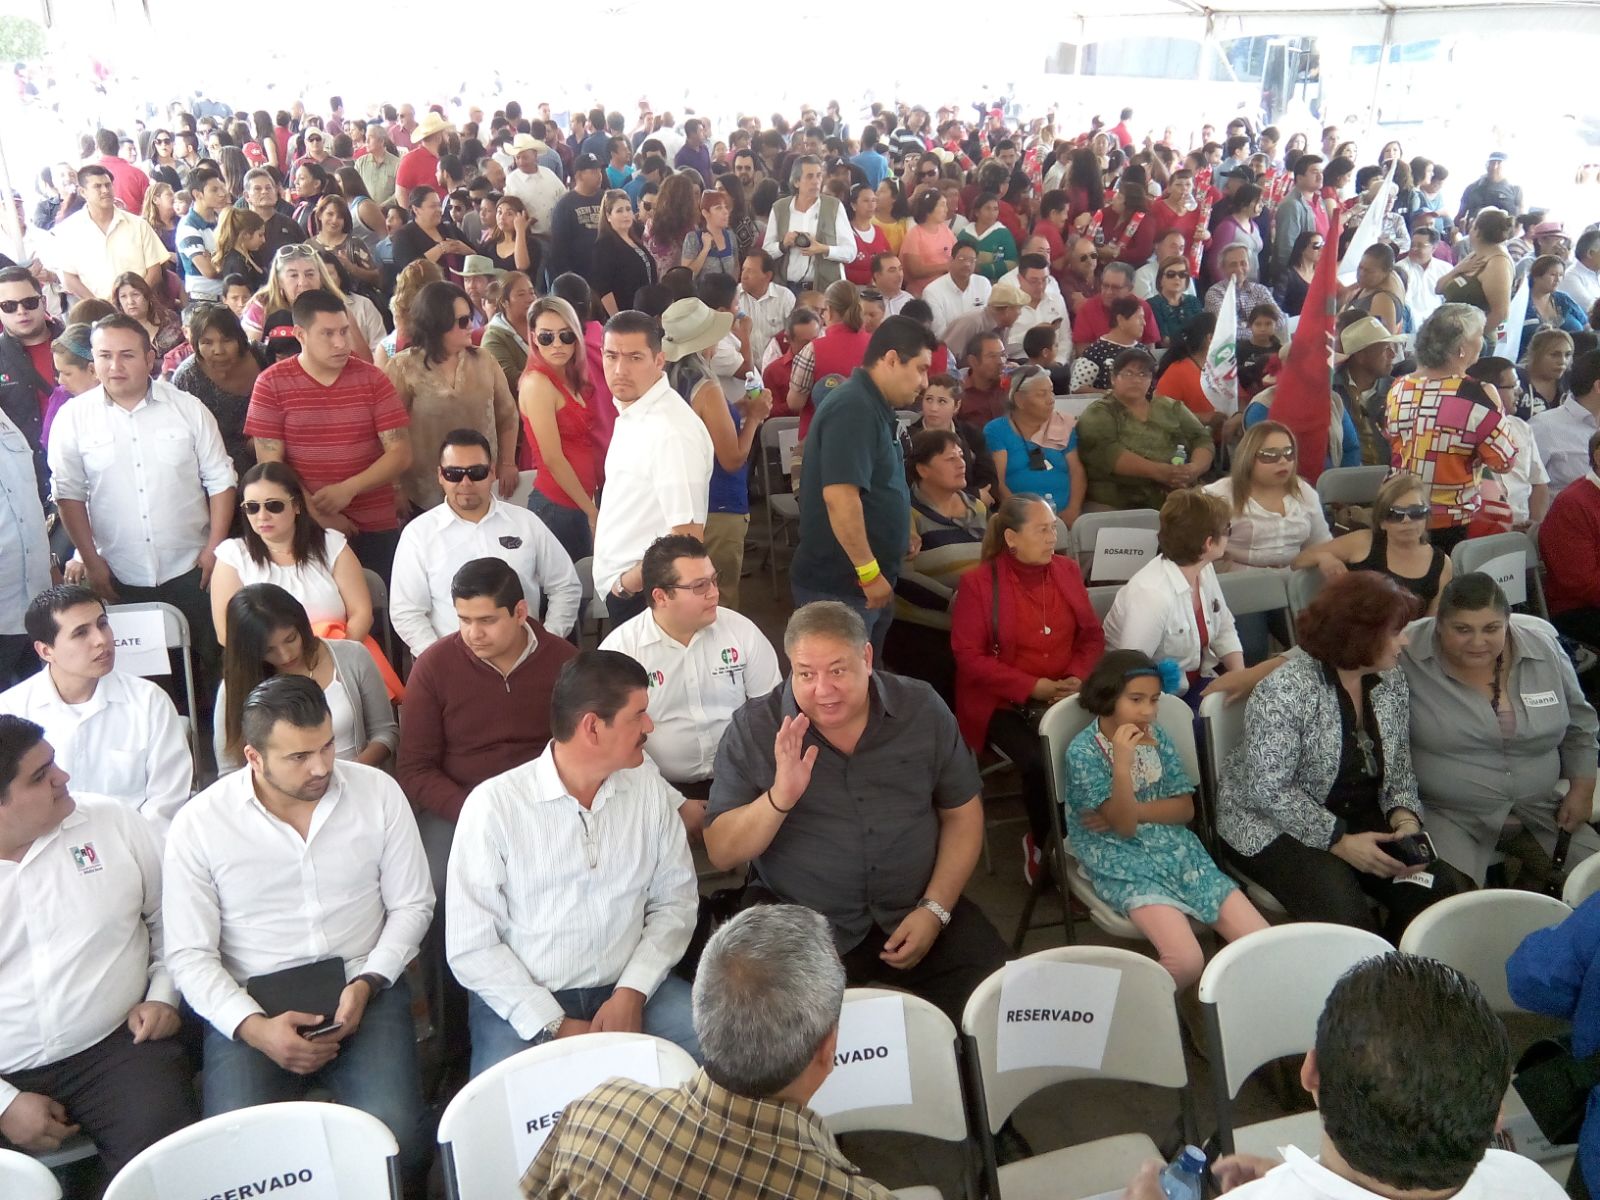 Entre el calor y la multitud, los precandidatos únicos dieron sus discursos. Foto: Cristian Torres